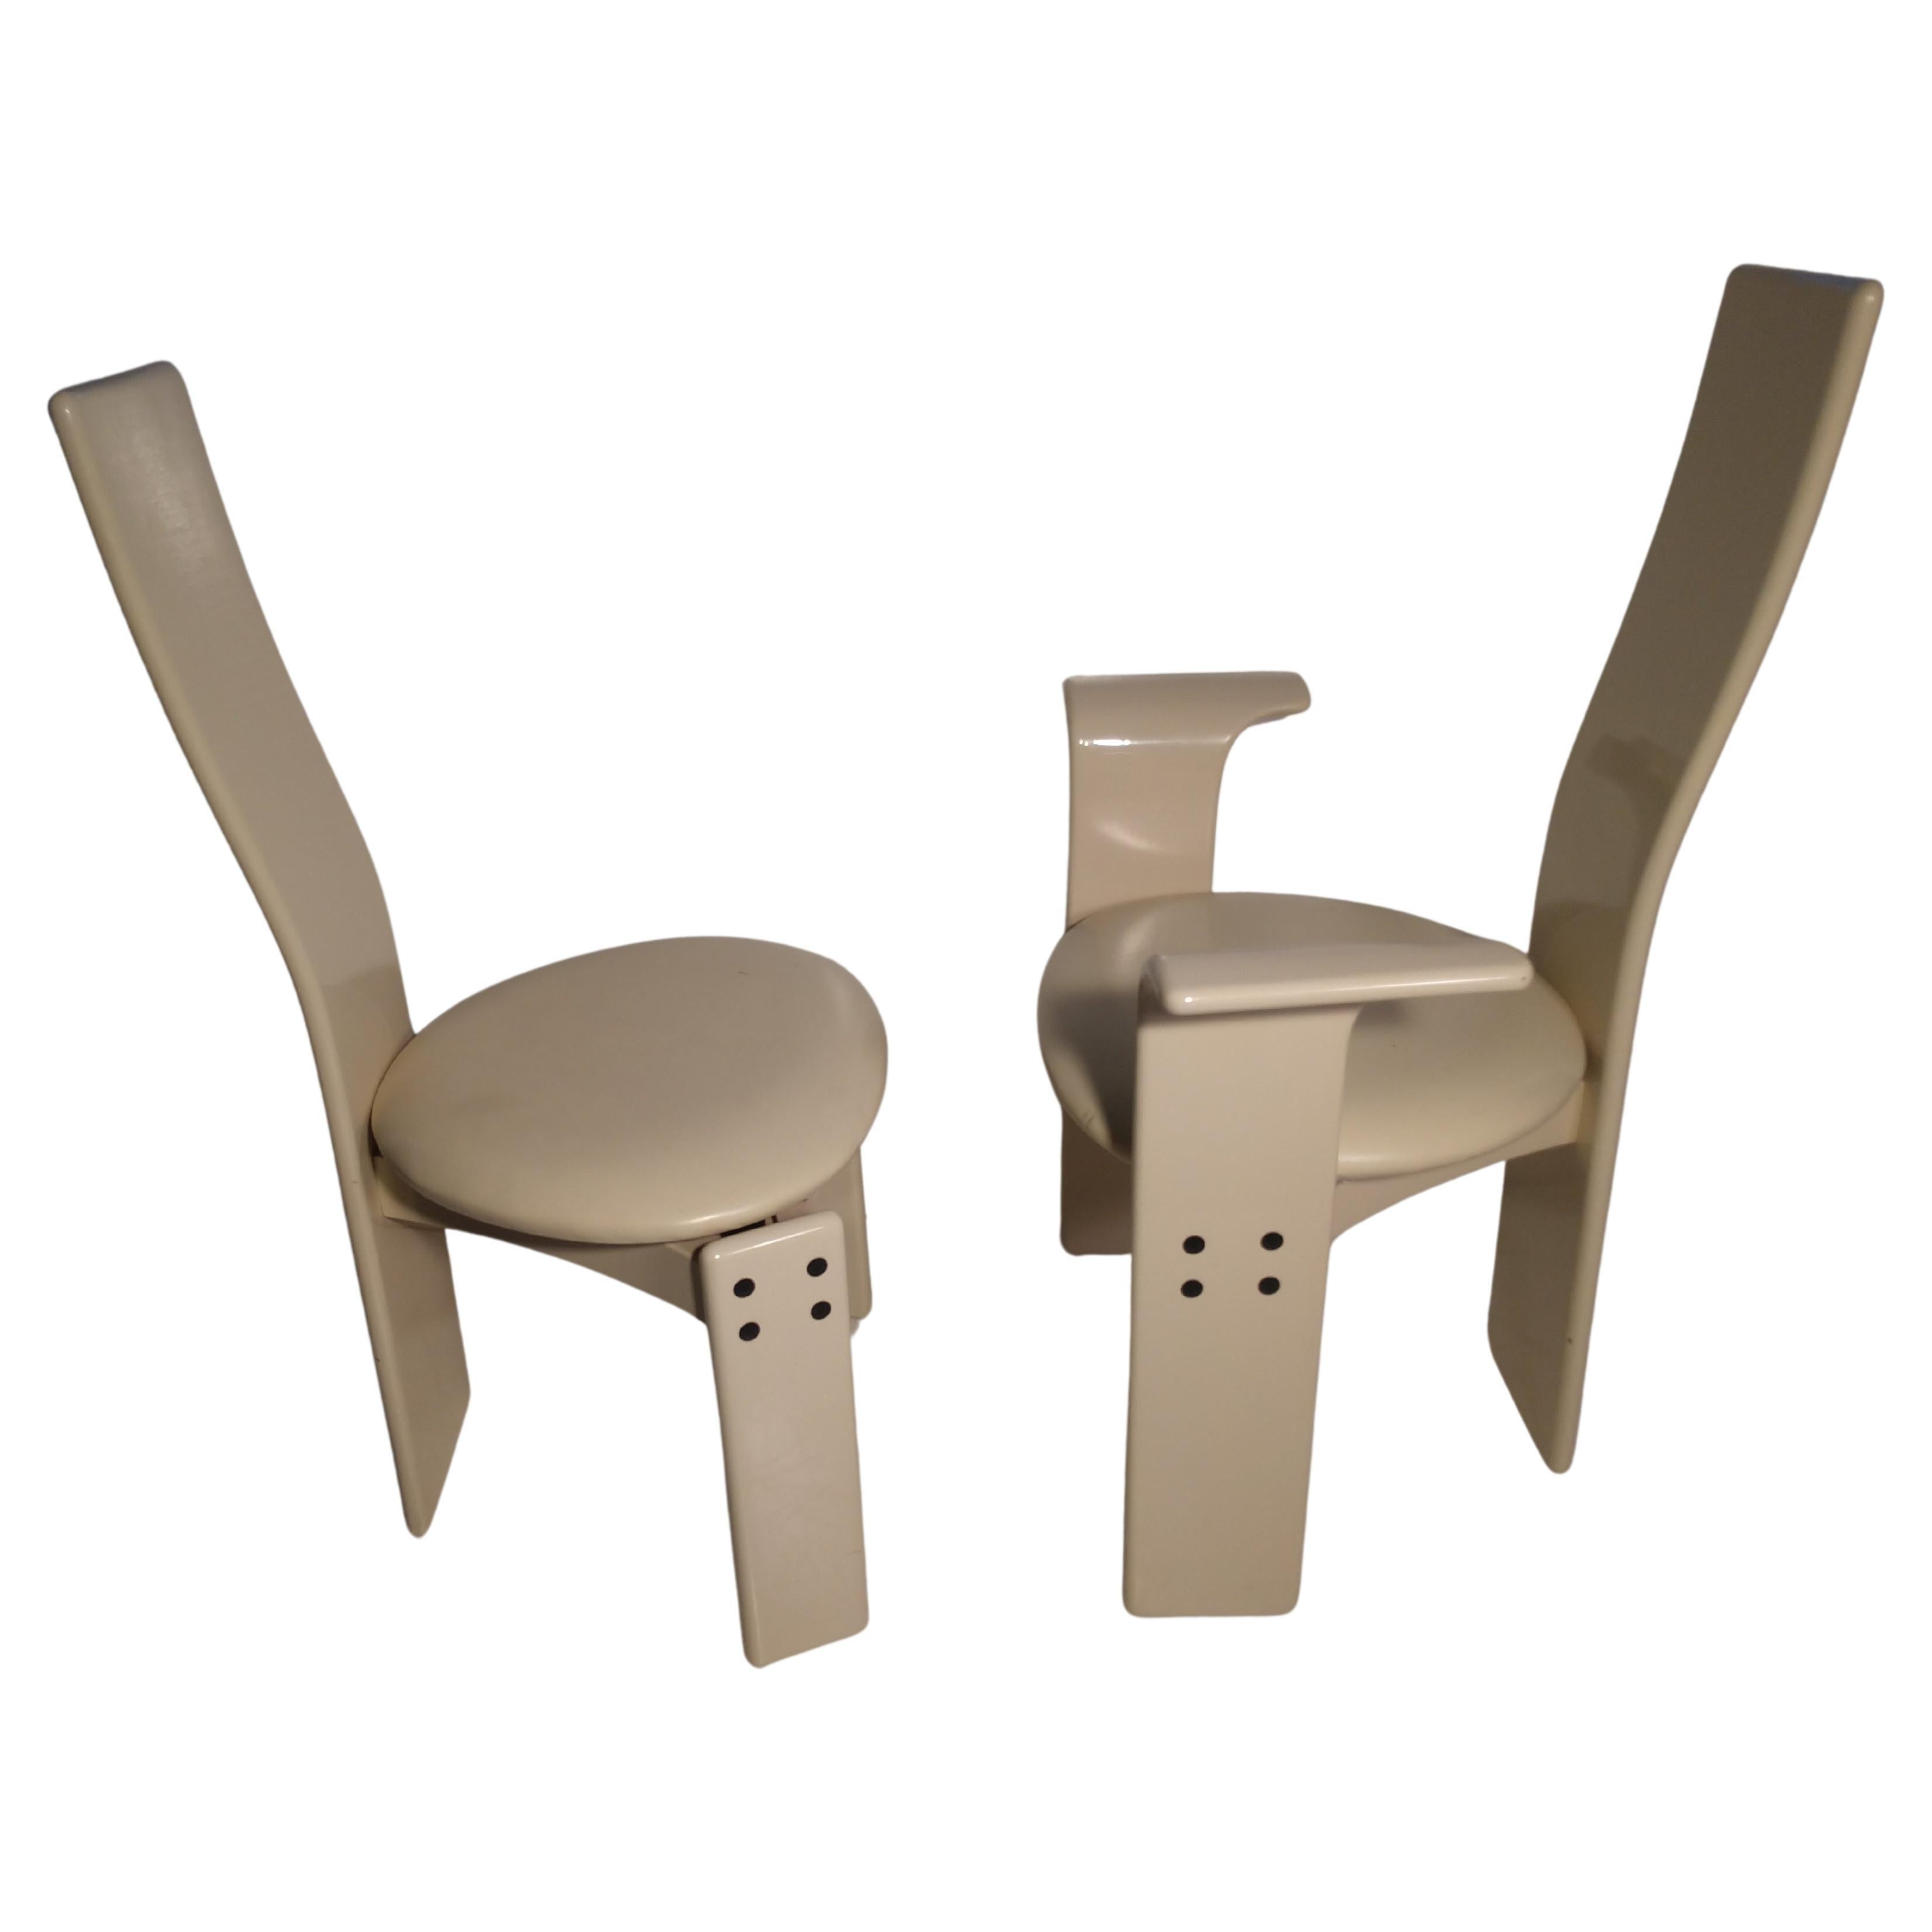 Set di 4 sedie da sala da pranzo postmoderne laccate bianche. Marchio made in Italy, nello stile di Saporiti. Le imperfezioni minori della laccatura sono minime.
Nella foto. Dimensioni: L'altezza della seduta è di 18 cm.